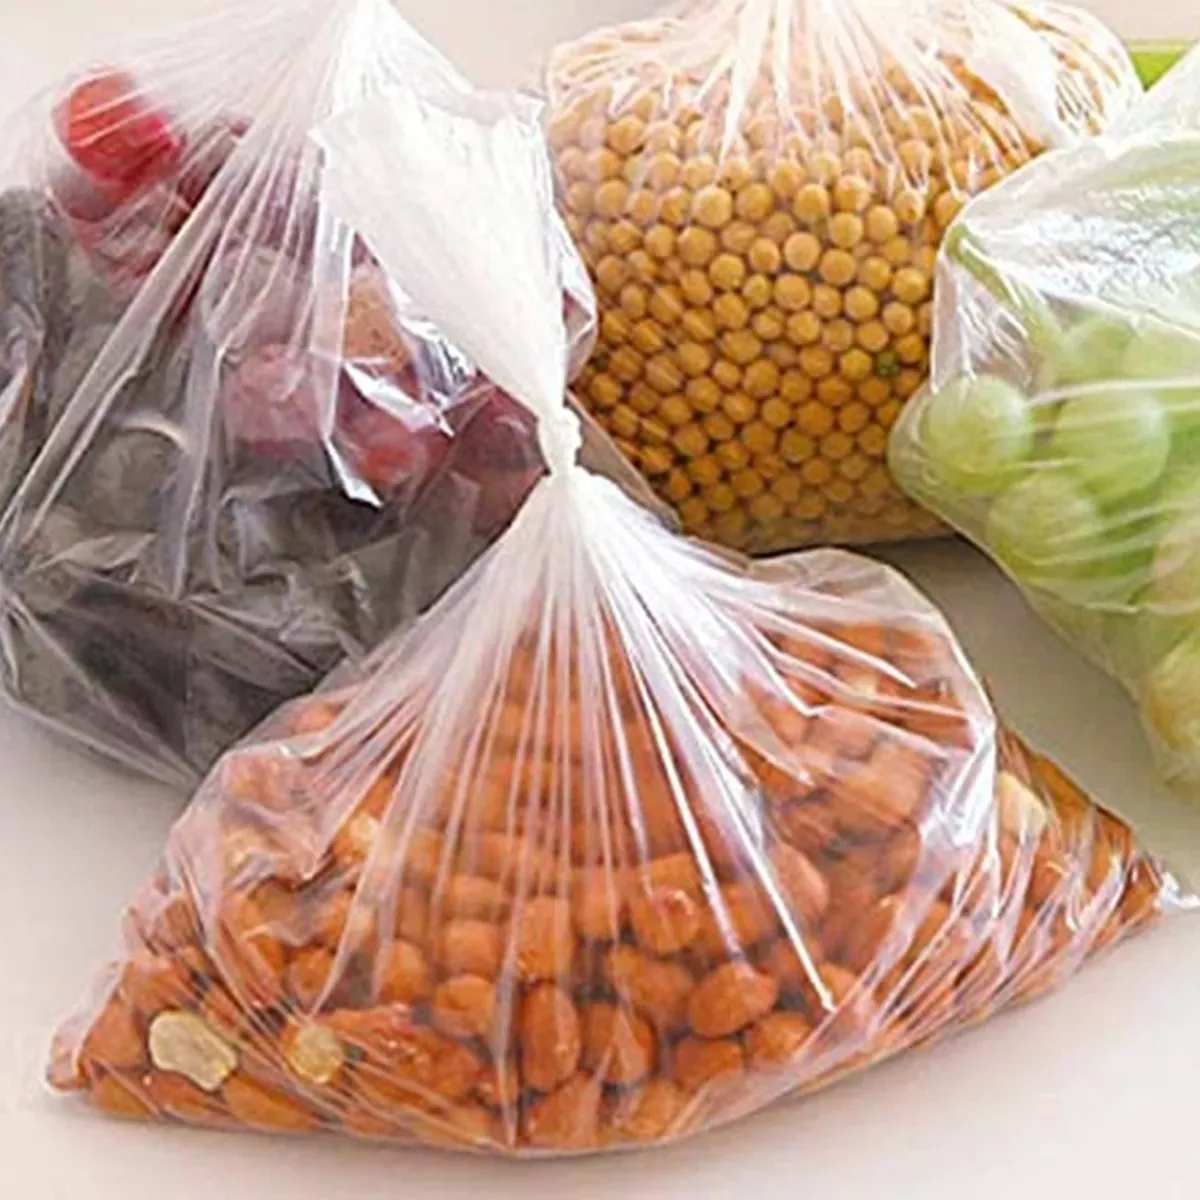 Segunda imagem para pesquisa de sacos plasticos para congelar alimentos